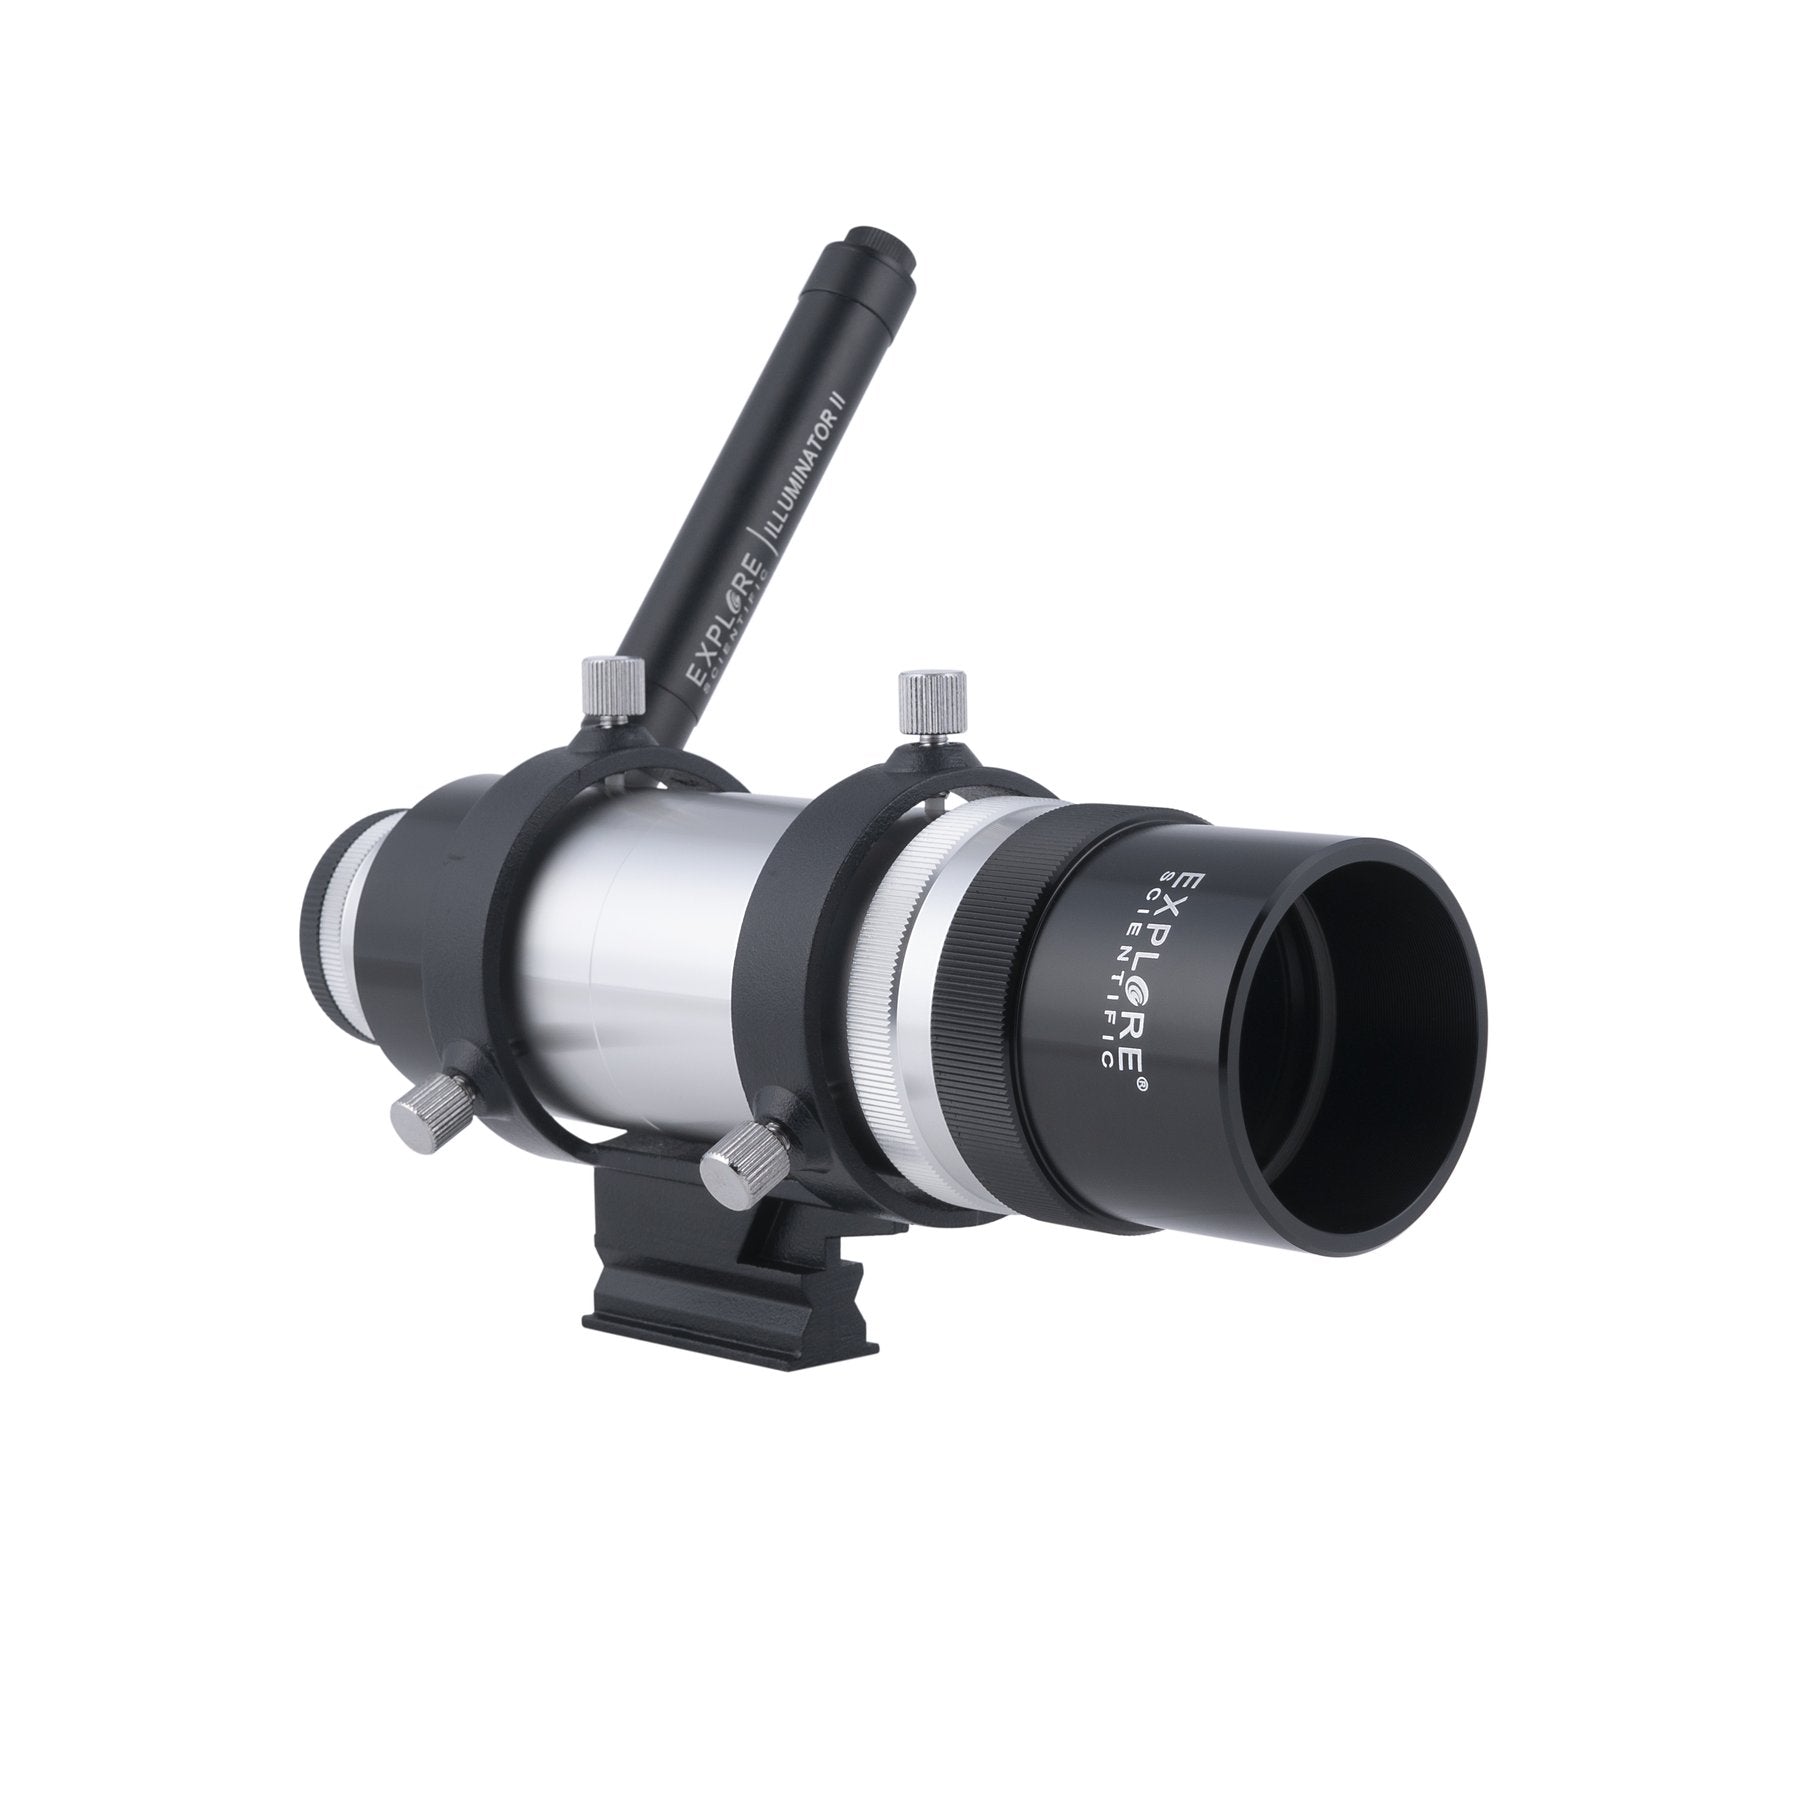 Explore Scientific 8x50mm Illuminated Viewfinder with Bracket-VFEI0850-01 - CoreScientifics-Telescopes, Sport Optics & More